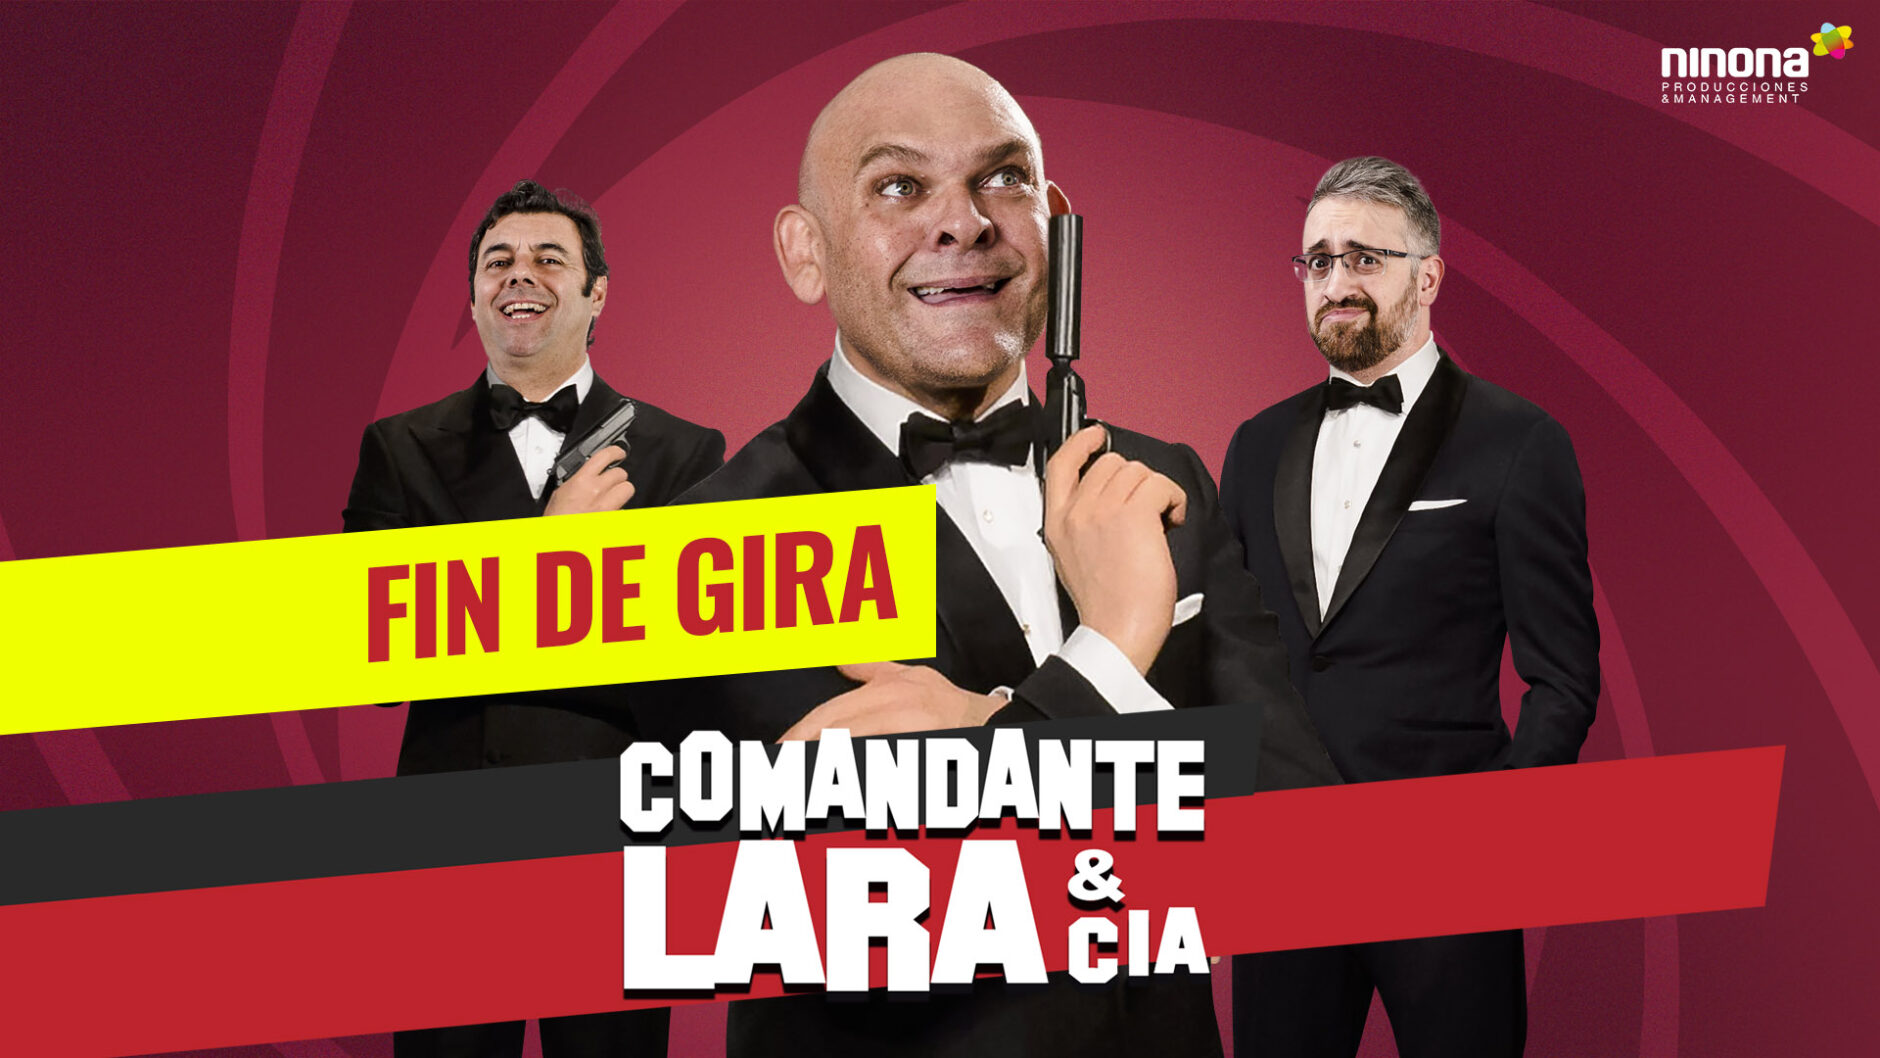 COMANDANTE LARA & CIA – FIN DE GIRA 1